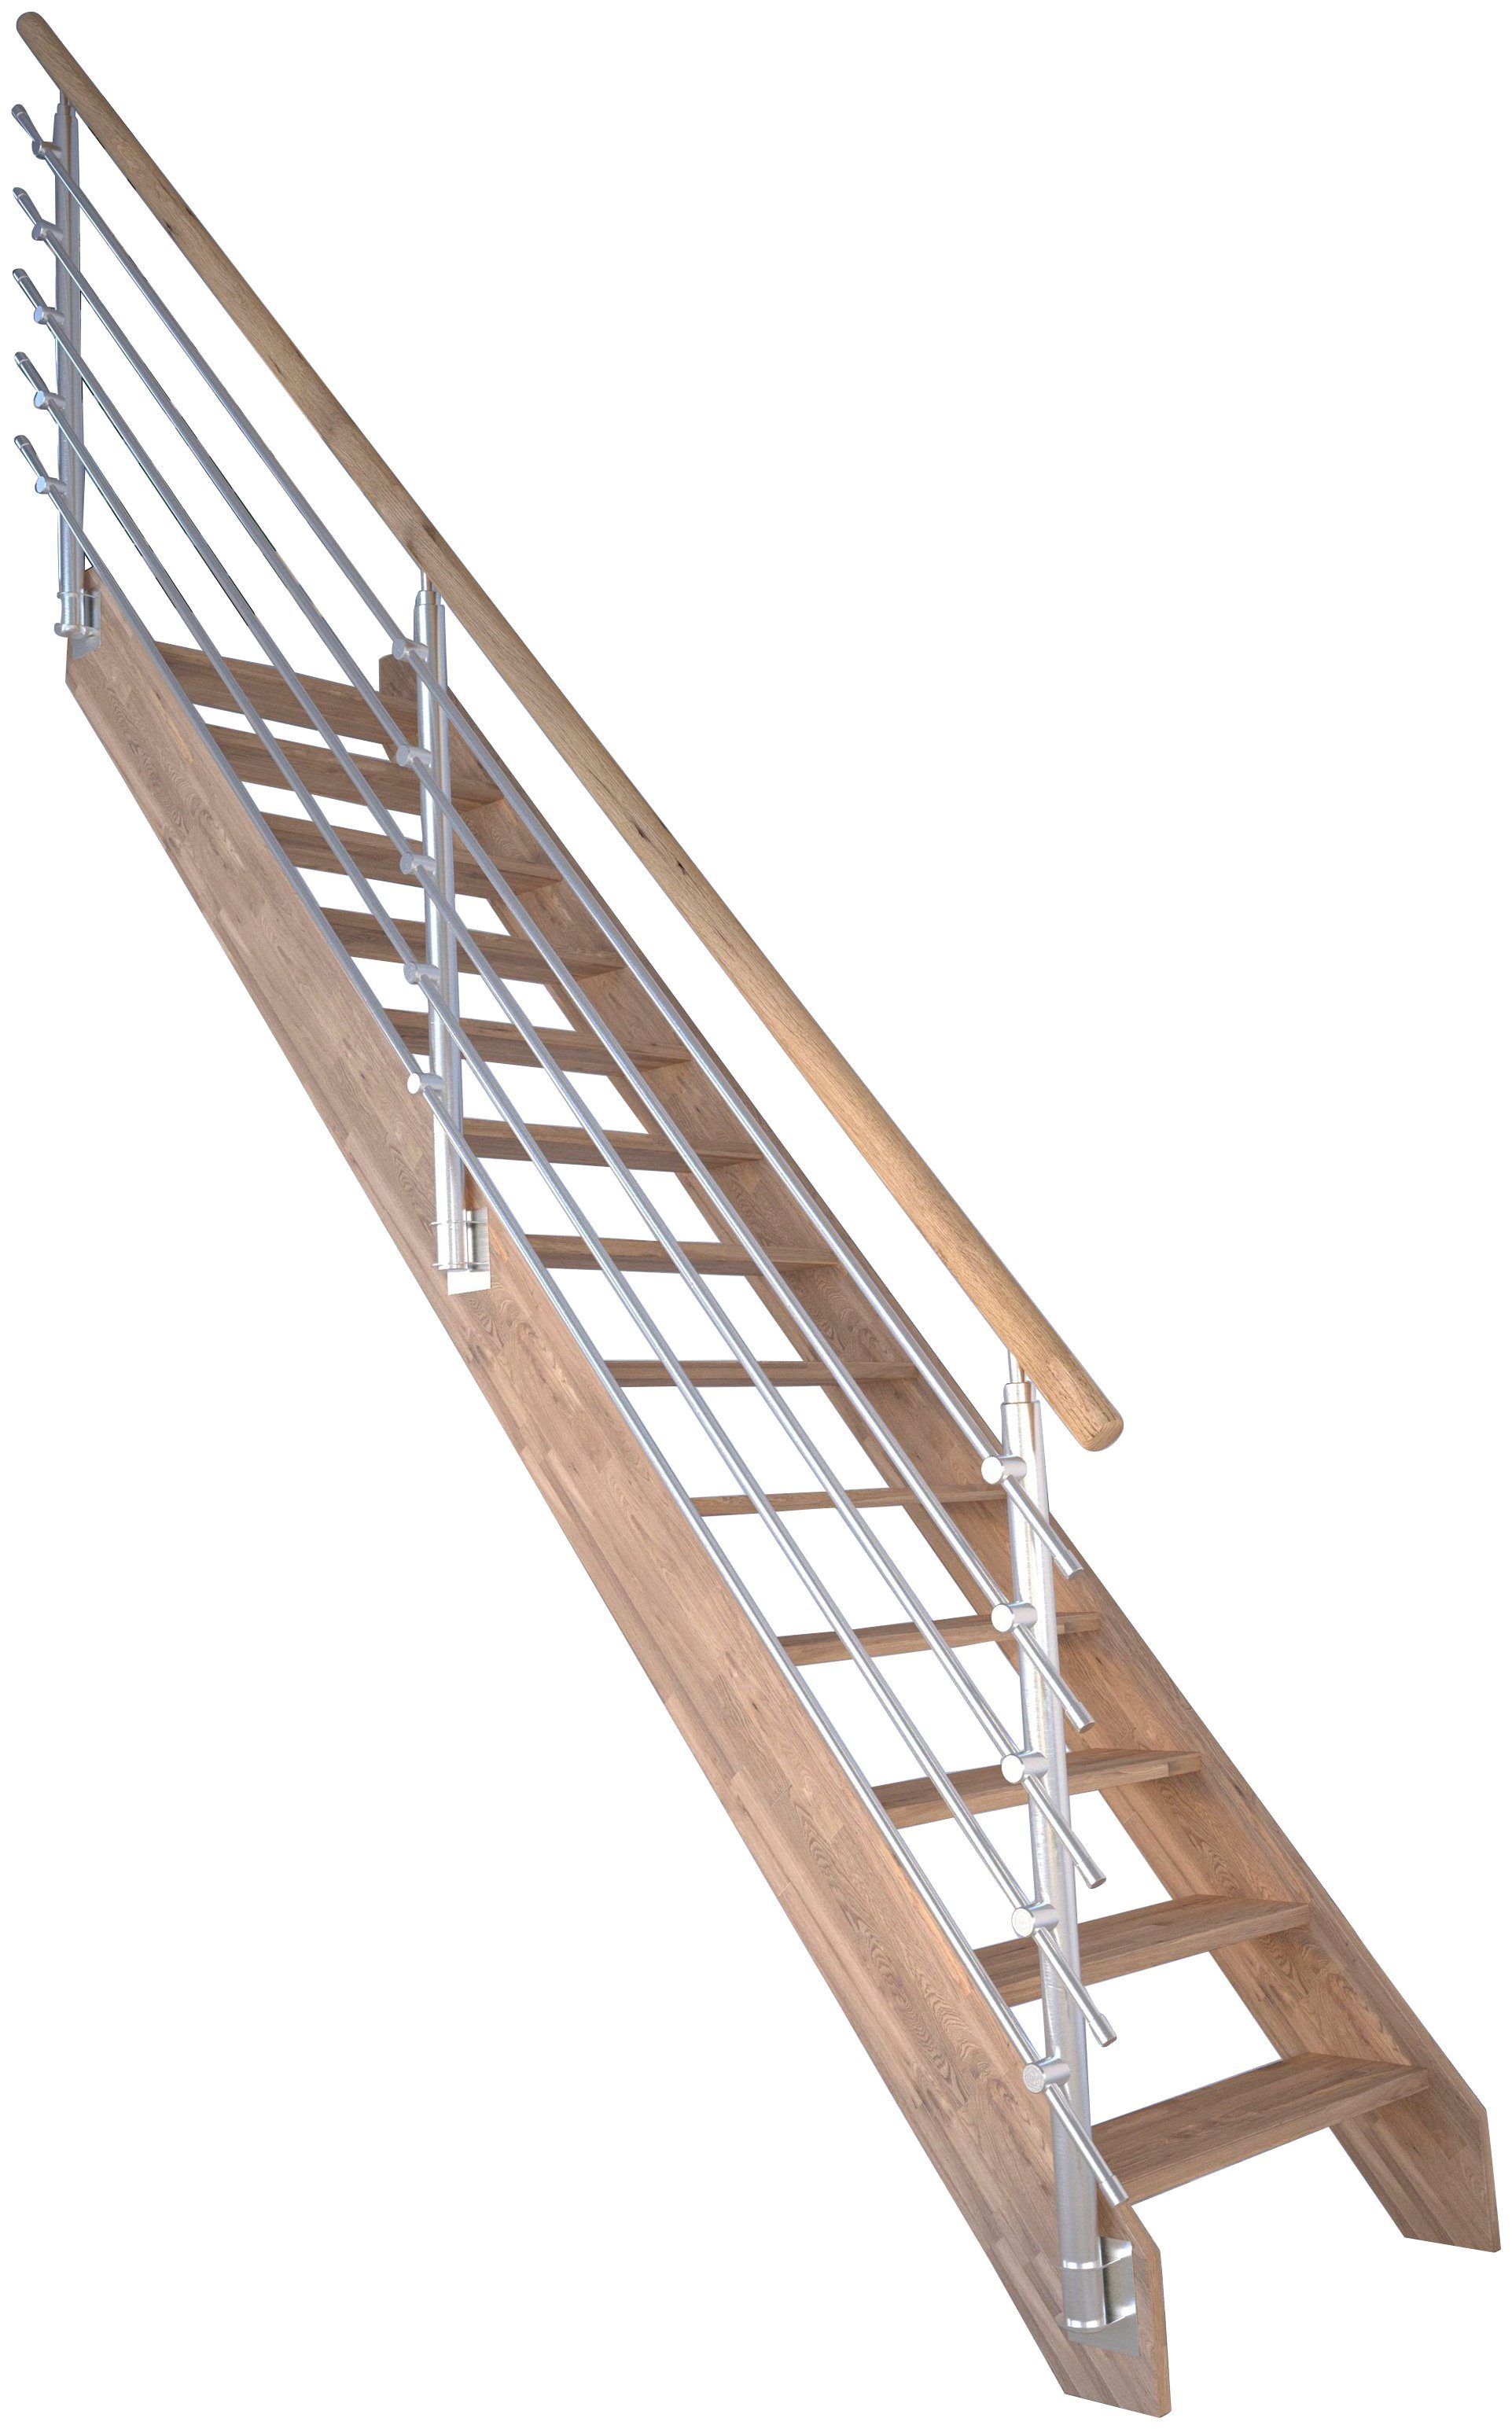 Starwood Raumspartreppe Massivholz Rhodos, Design-Geländer Edelstahl, für Geschosshöhen bis 300 cm, Stufen offen, Durchgehende Wangenteile